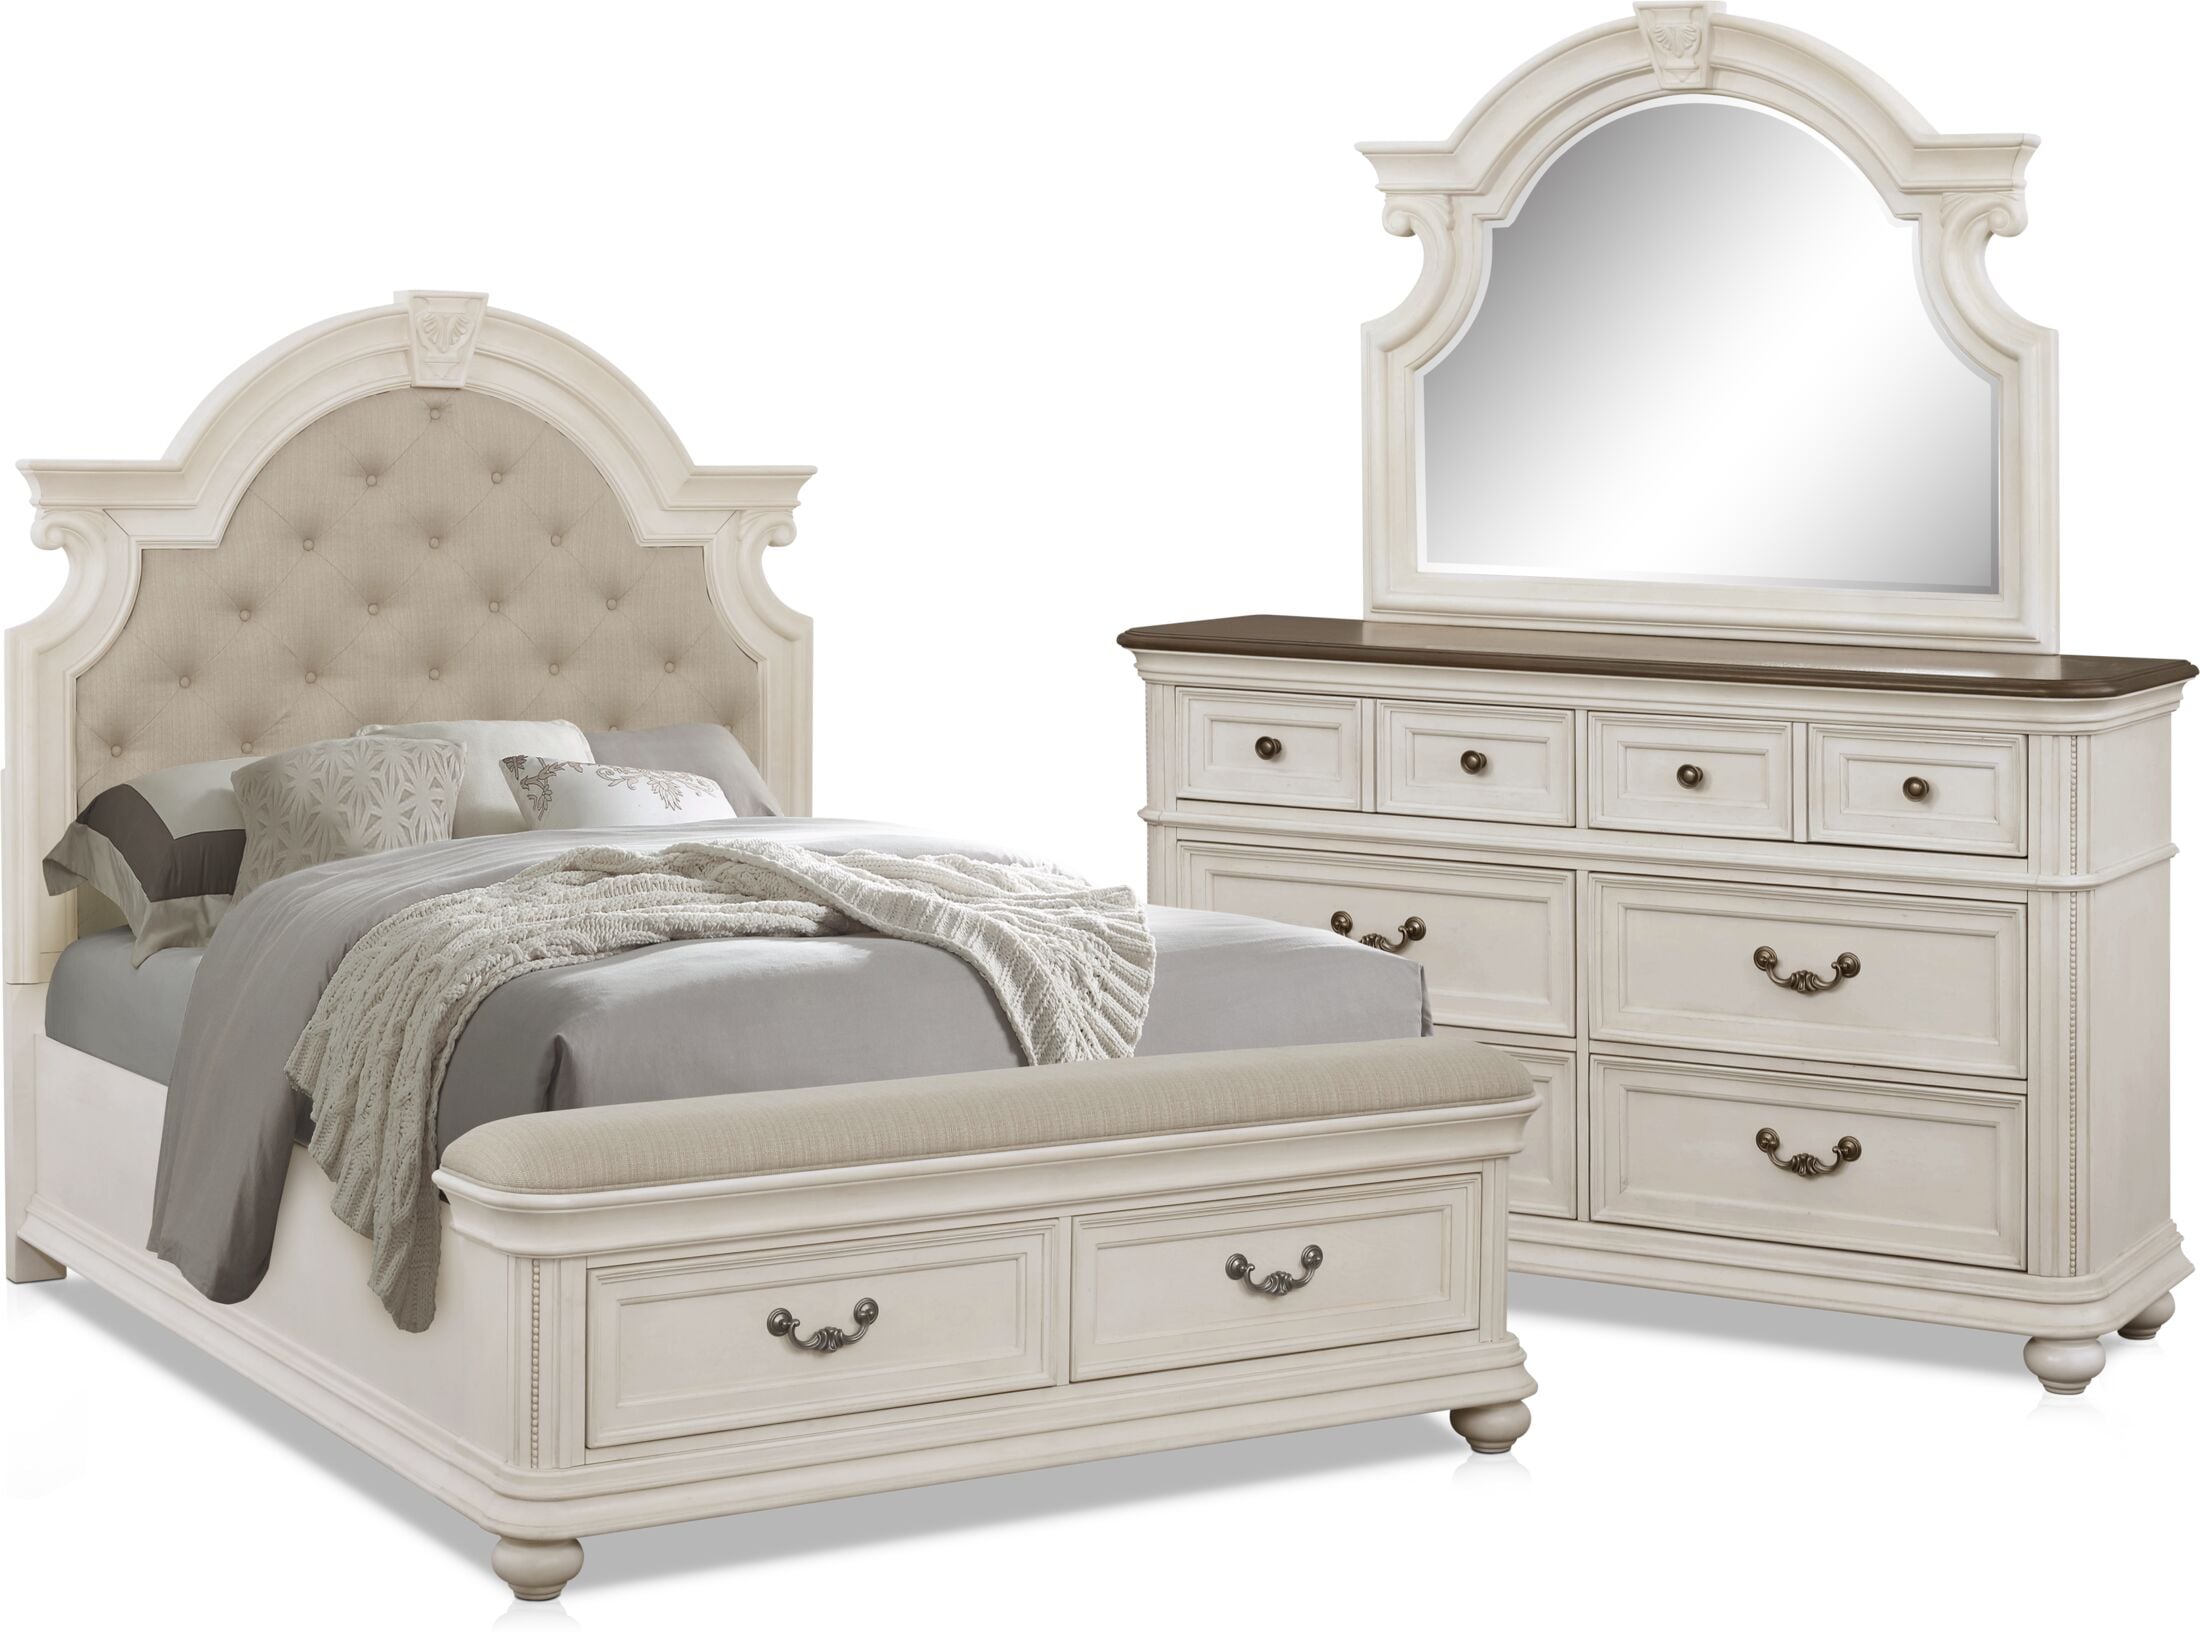 mayfair bedroom furniture nightstands com